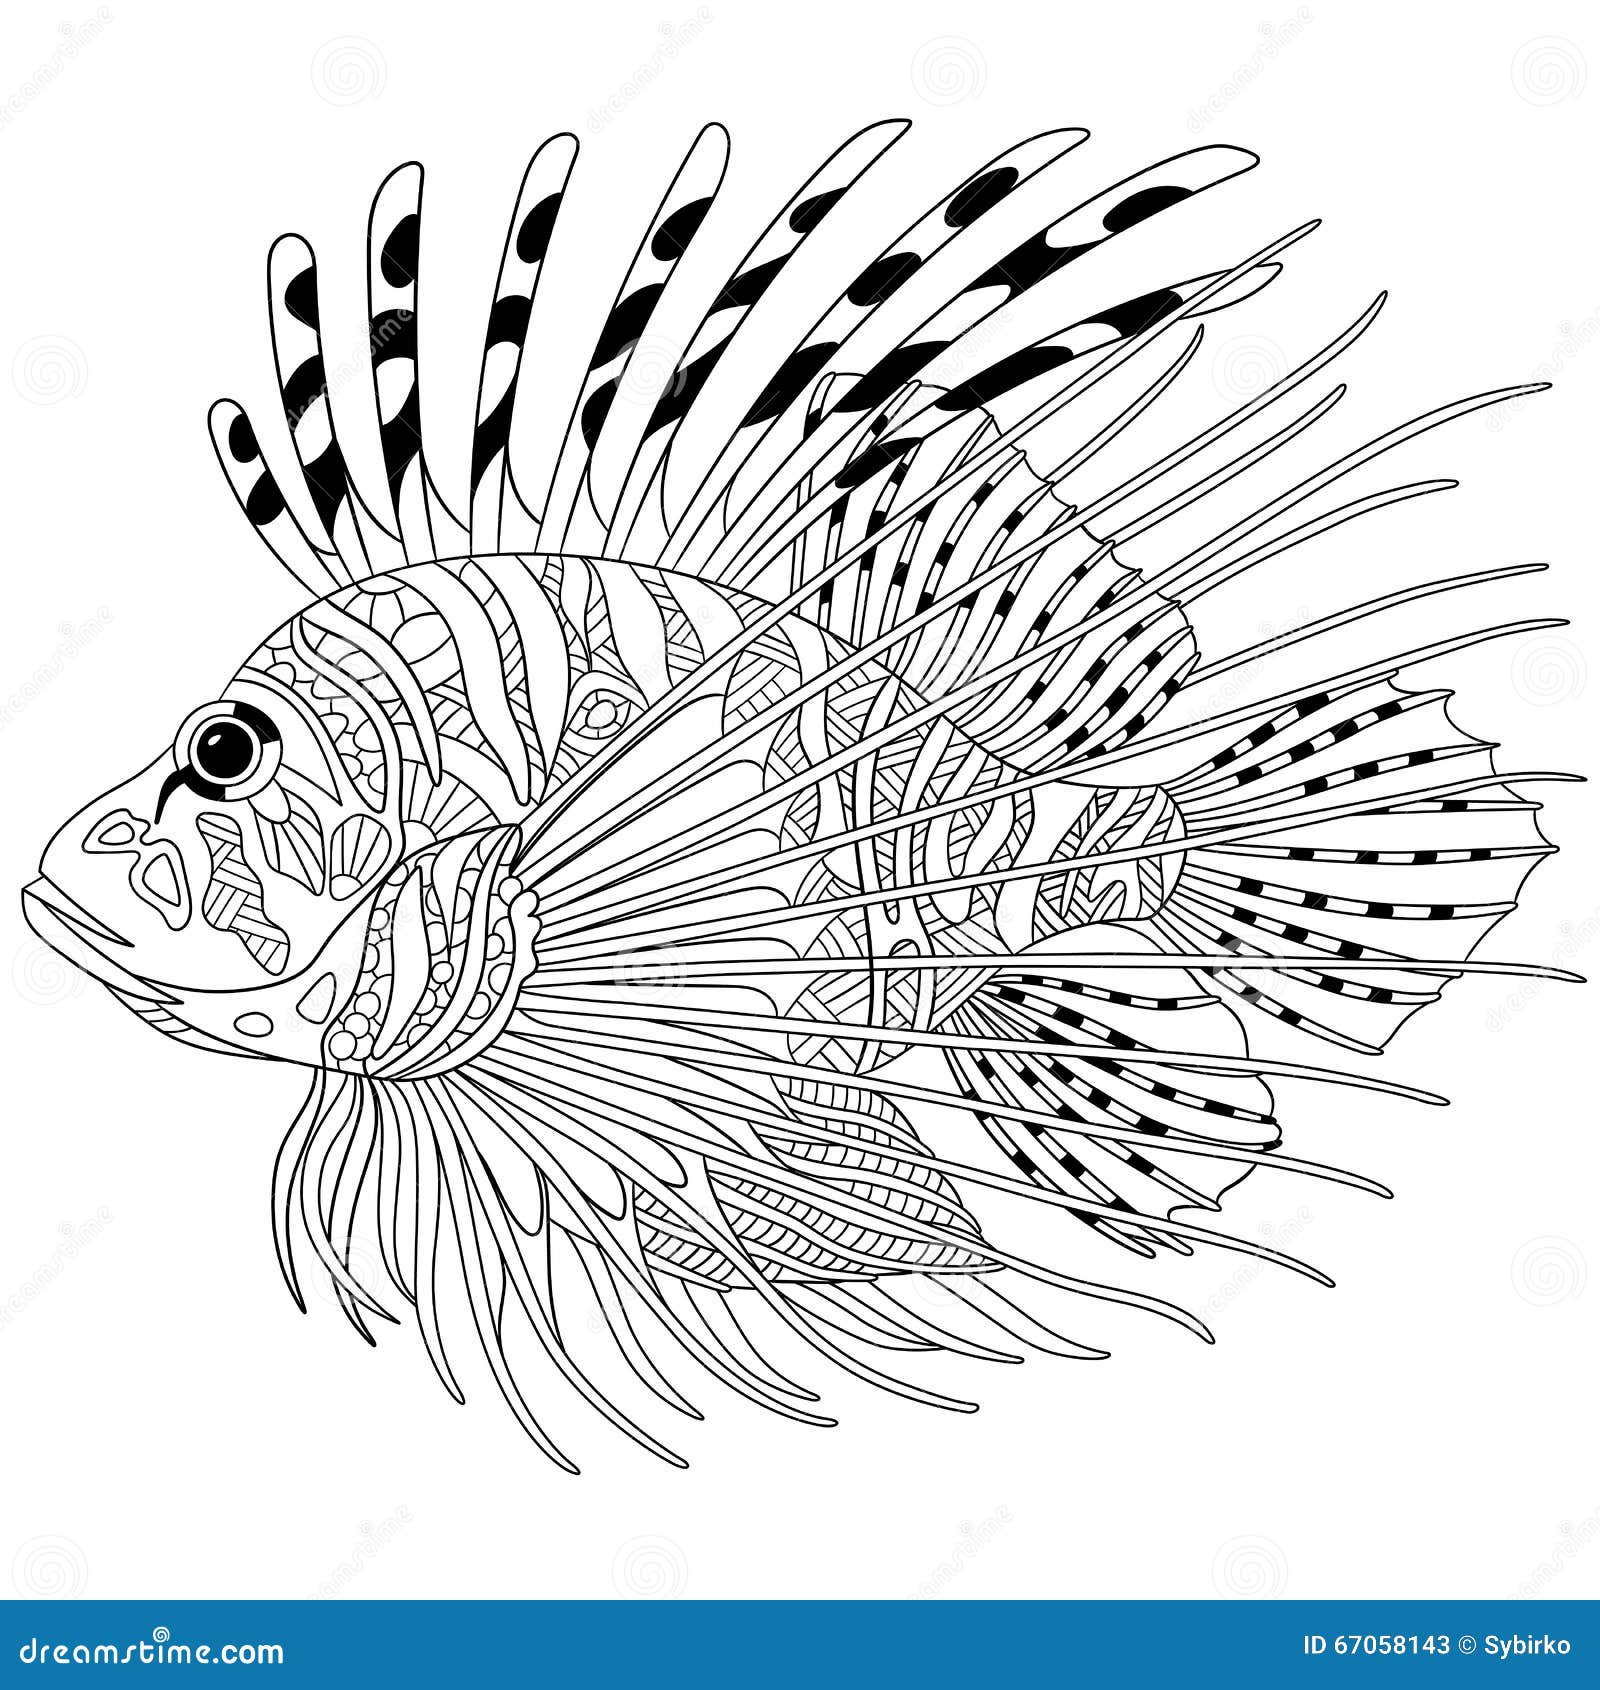 zebrafish clipart - photo #16